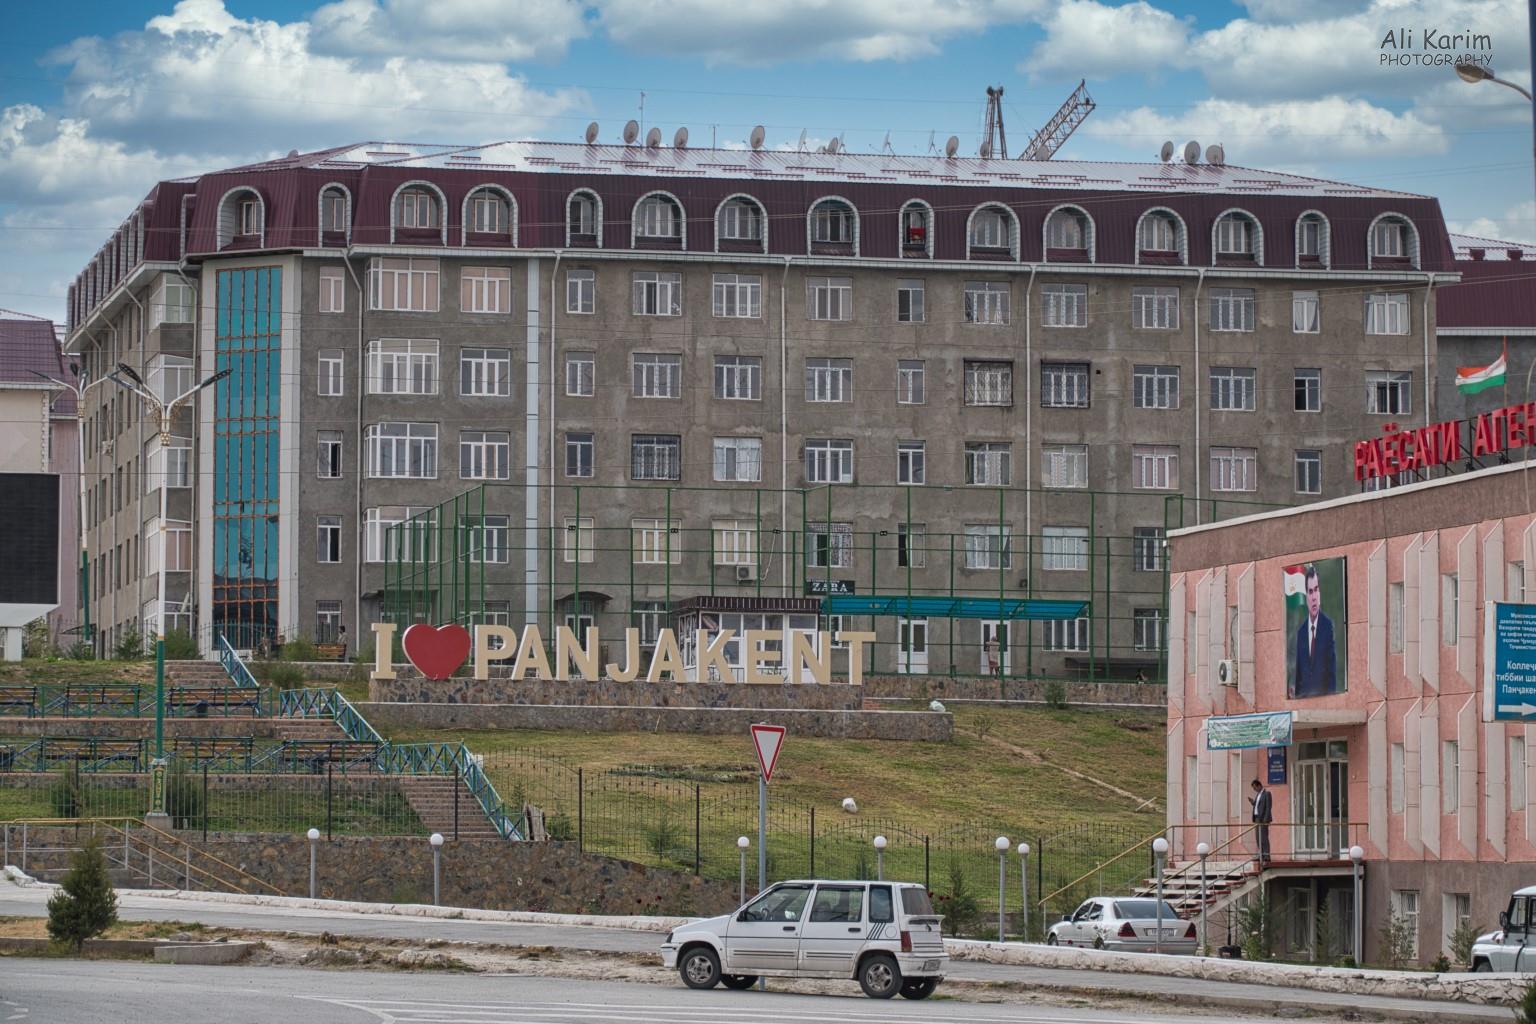 Samarkand, Uzbekistan Town of Panjakent